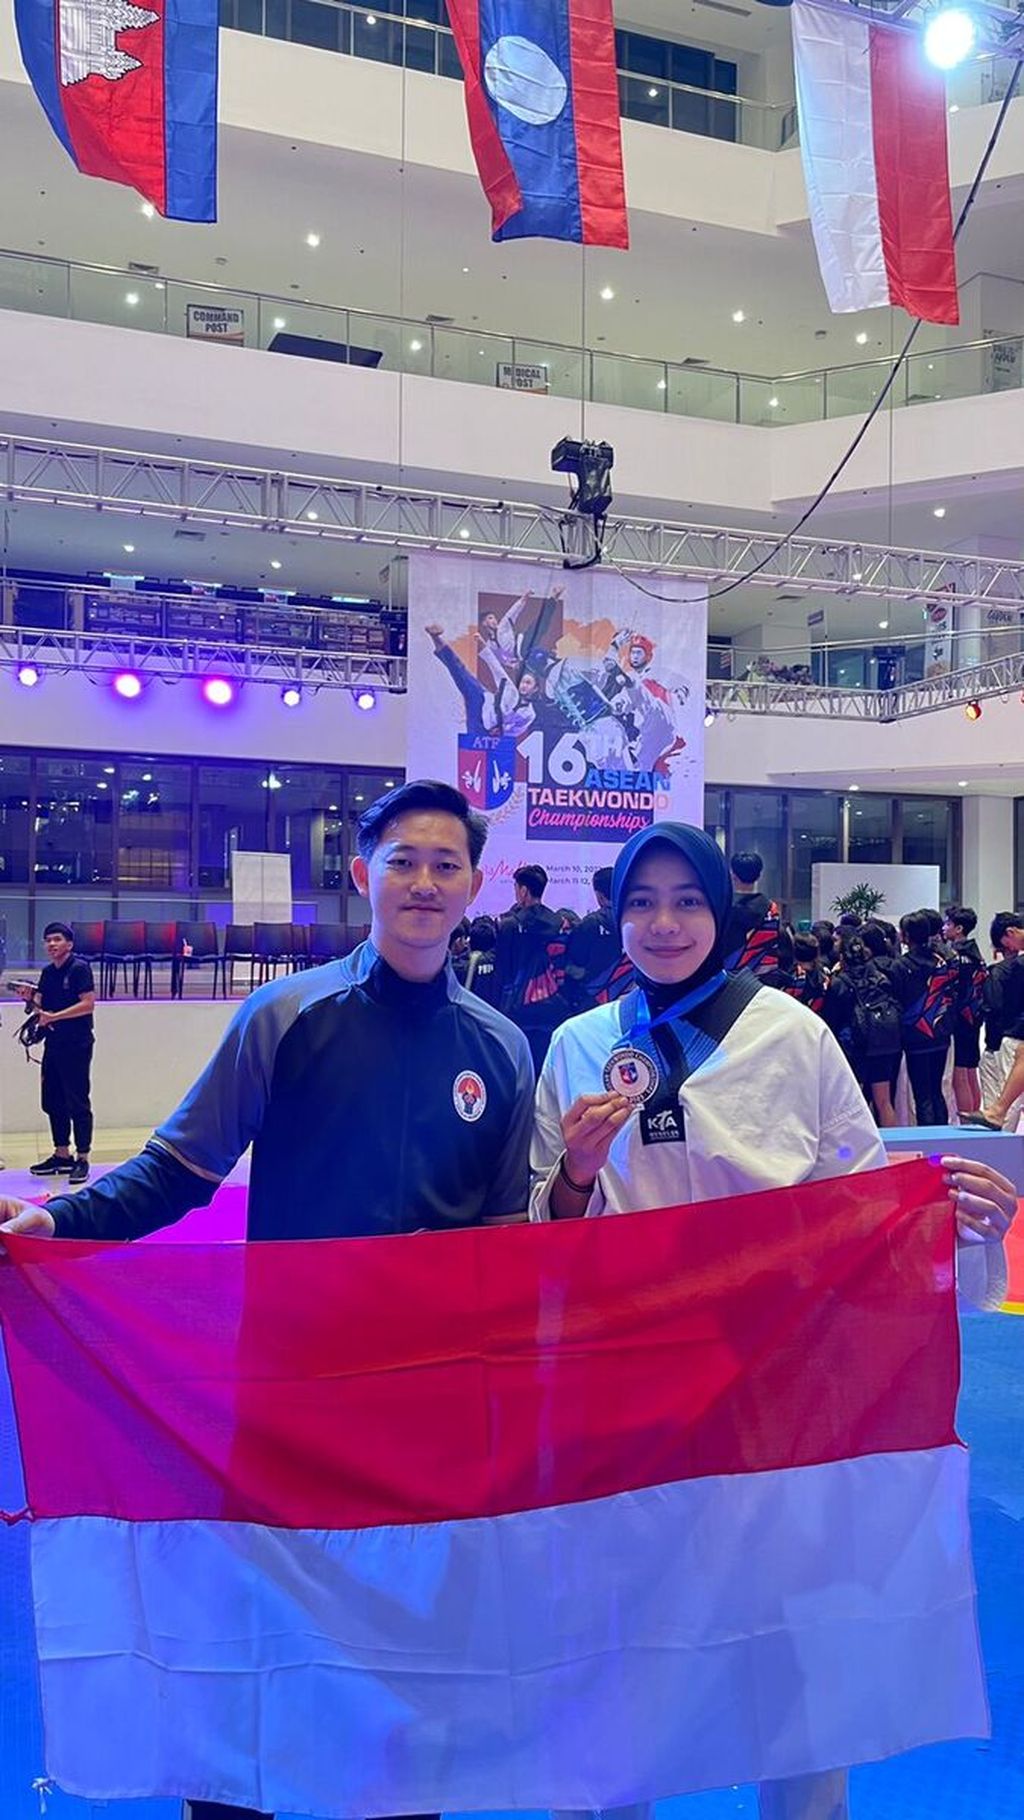 Atlet taekwondo Dinda Putri Lestari setelah mendapatkan medali emas dalam kejuaraan Asean Taekwondo Championship ke-16 yang diadakan di Parañaque, Manilia, Filipina, Minggu (12/3/2023).